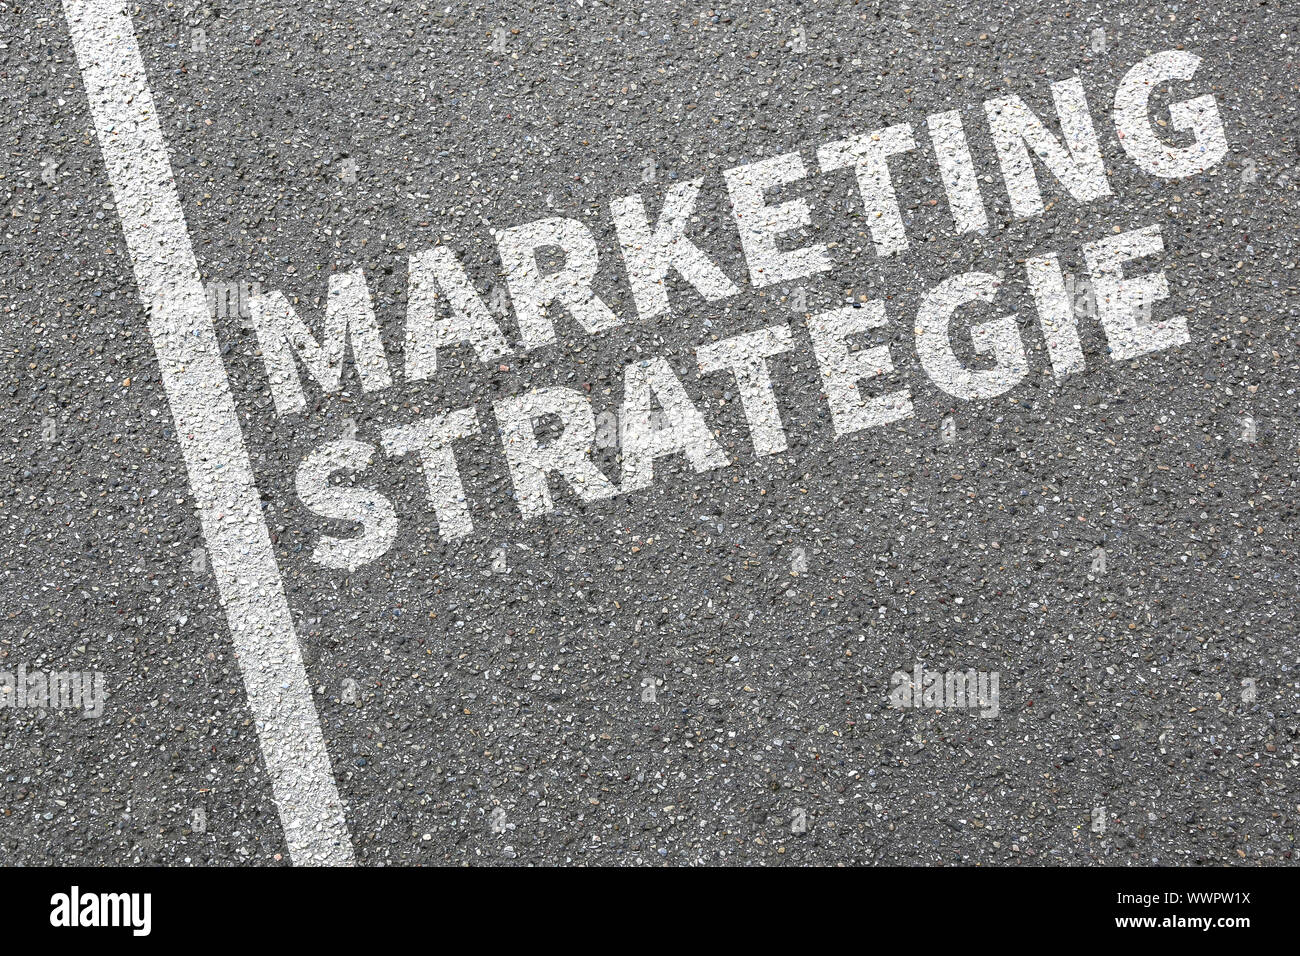 Stratégie Marketing Vente de publicité des ventes de la société Business Concept Banque D'Images